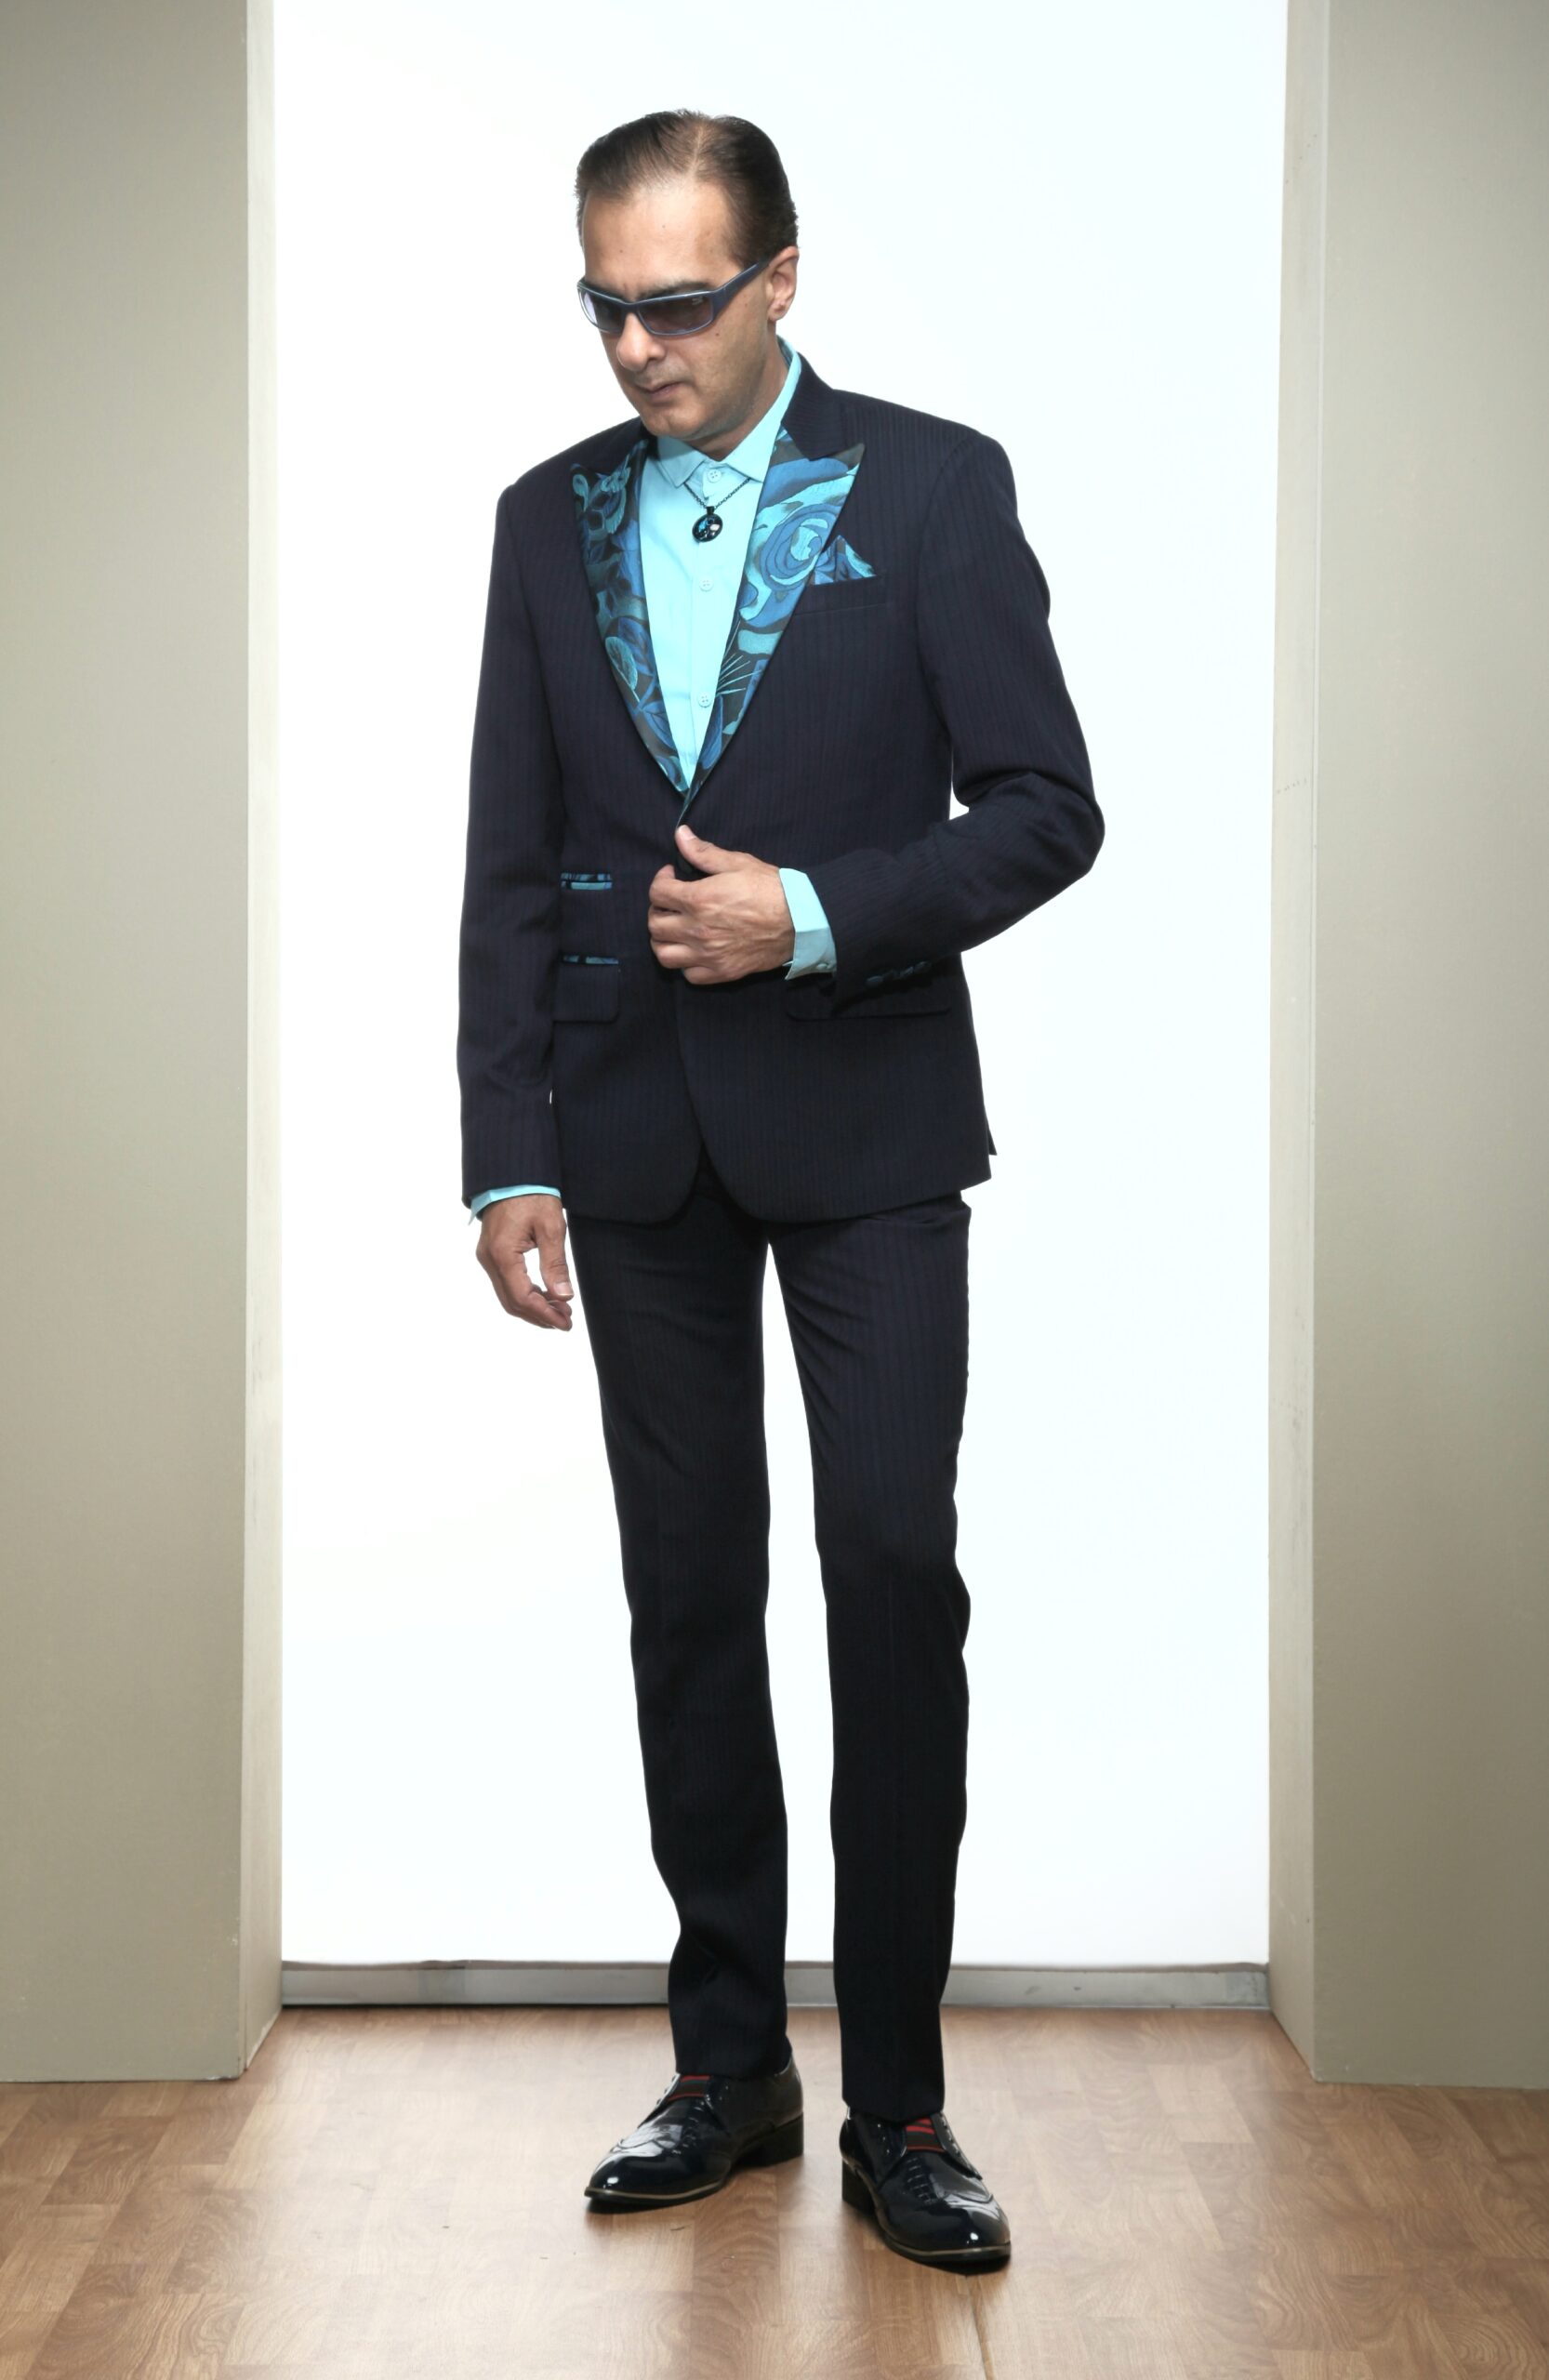 MST-5068-03-rent_rental_hire_tuxedo_suit_black_tie_suit_designer_suits_shop_tailor_tailors_singapore_wedding